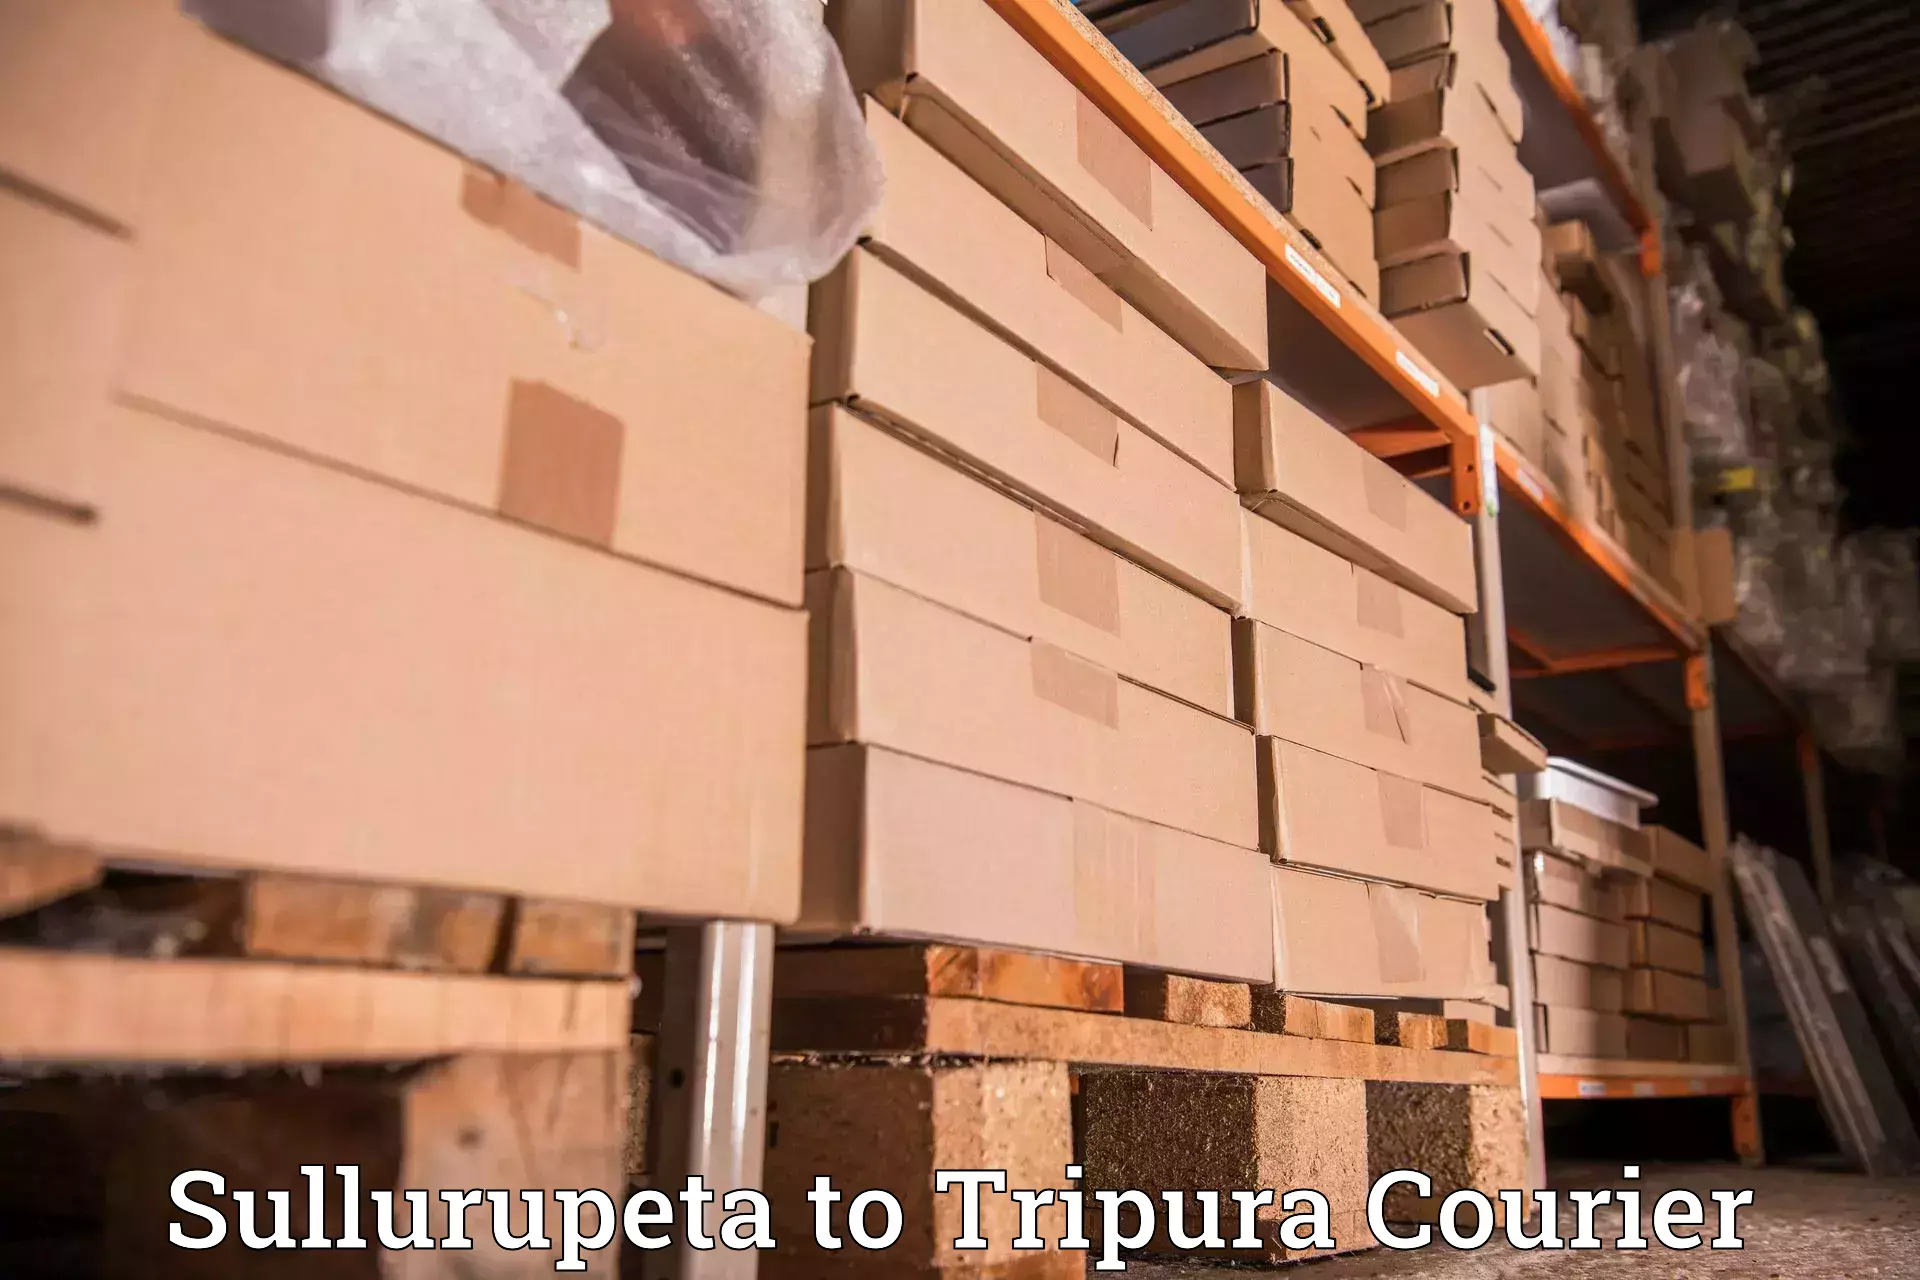 User-friendly delivery service Sullurupeta to North Tripura